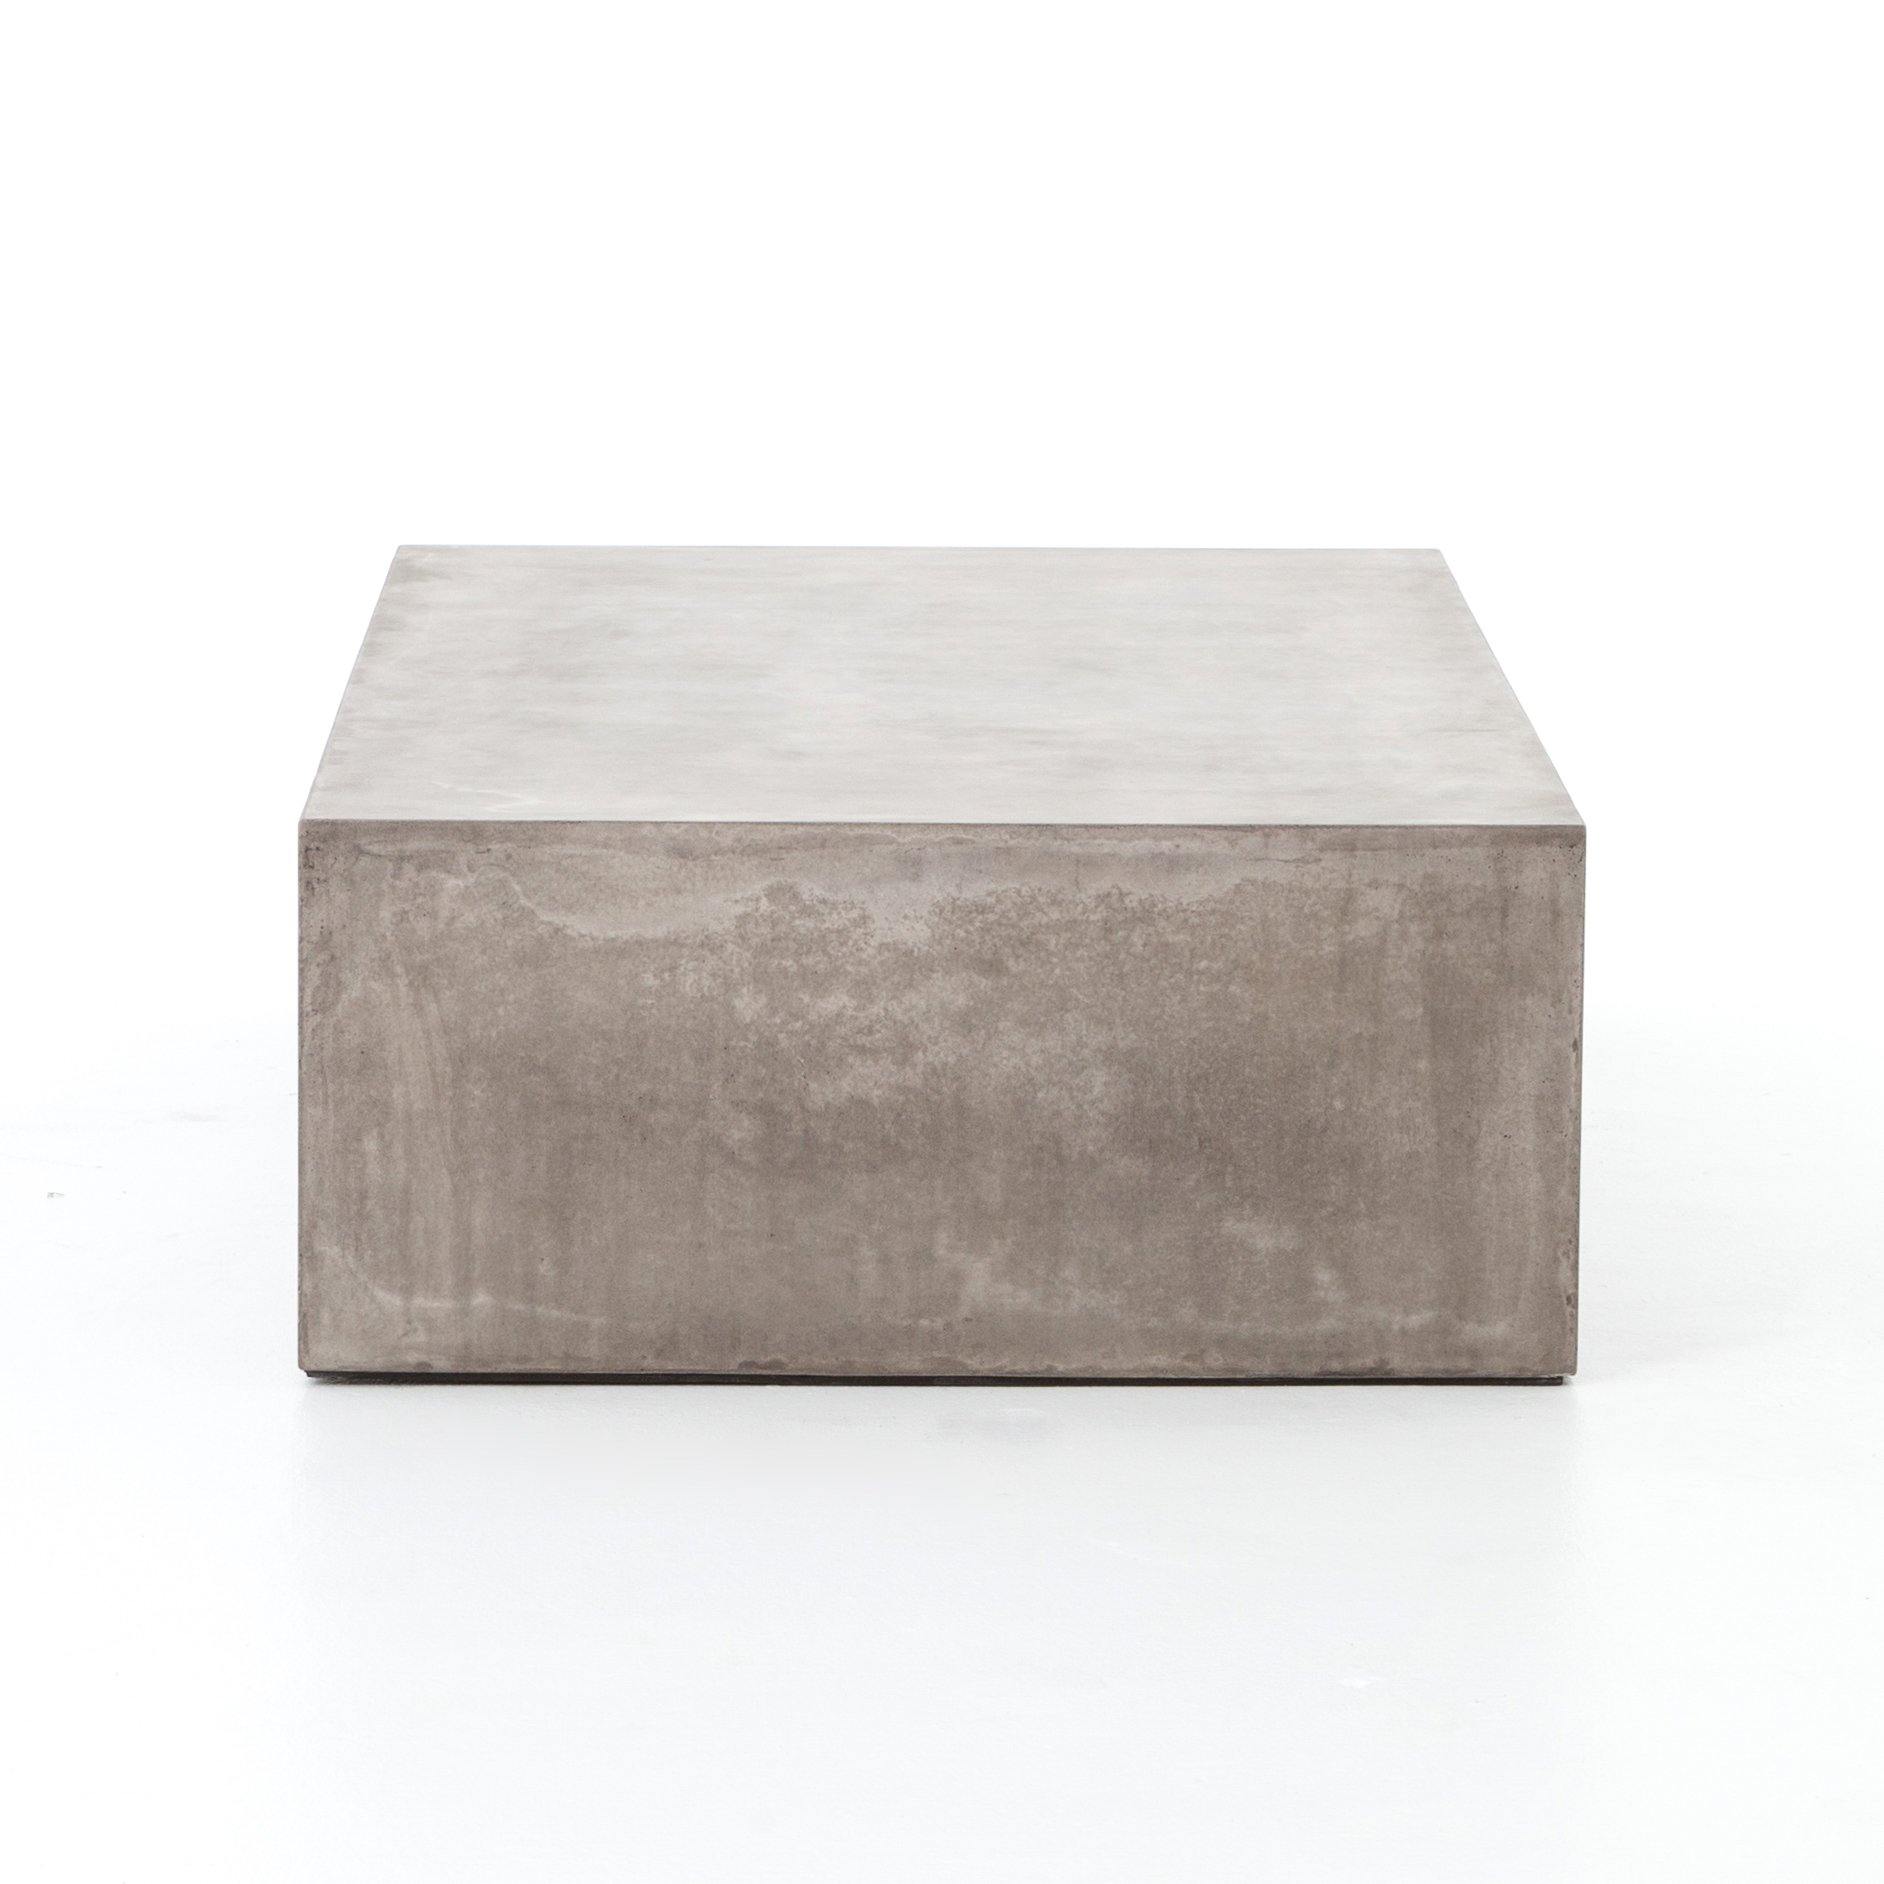 Parish Concrete Coffee Table - Reimagine Designs - coffee table, outdoor coffee table